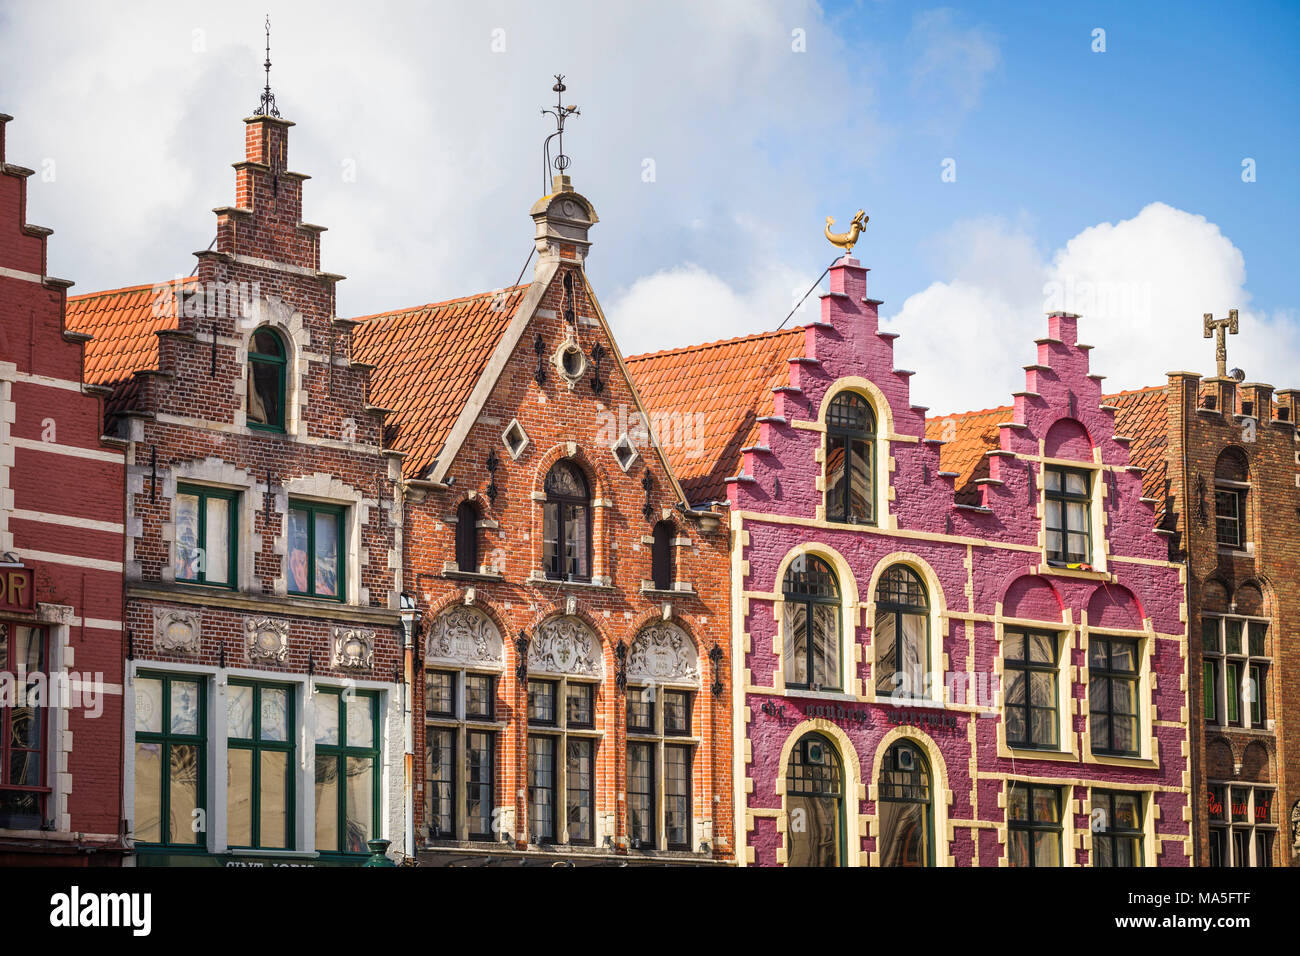 La vieille ville de Gand, Belgique. Banque D'Images